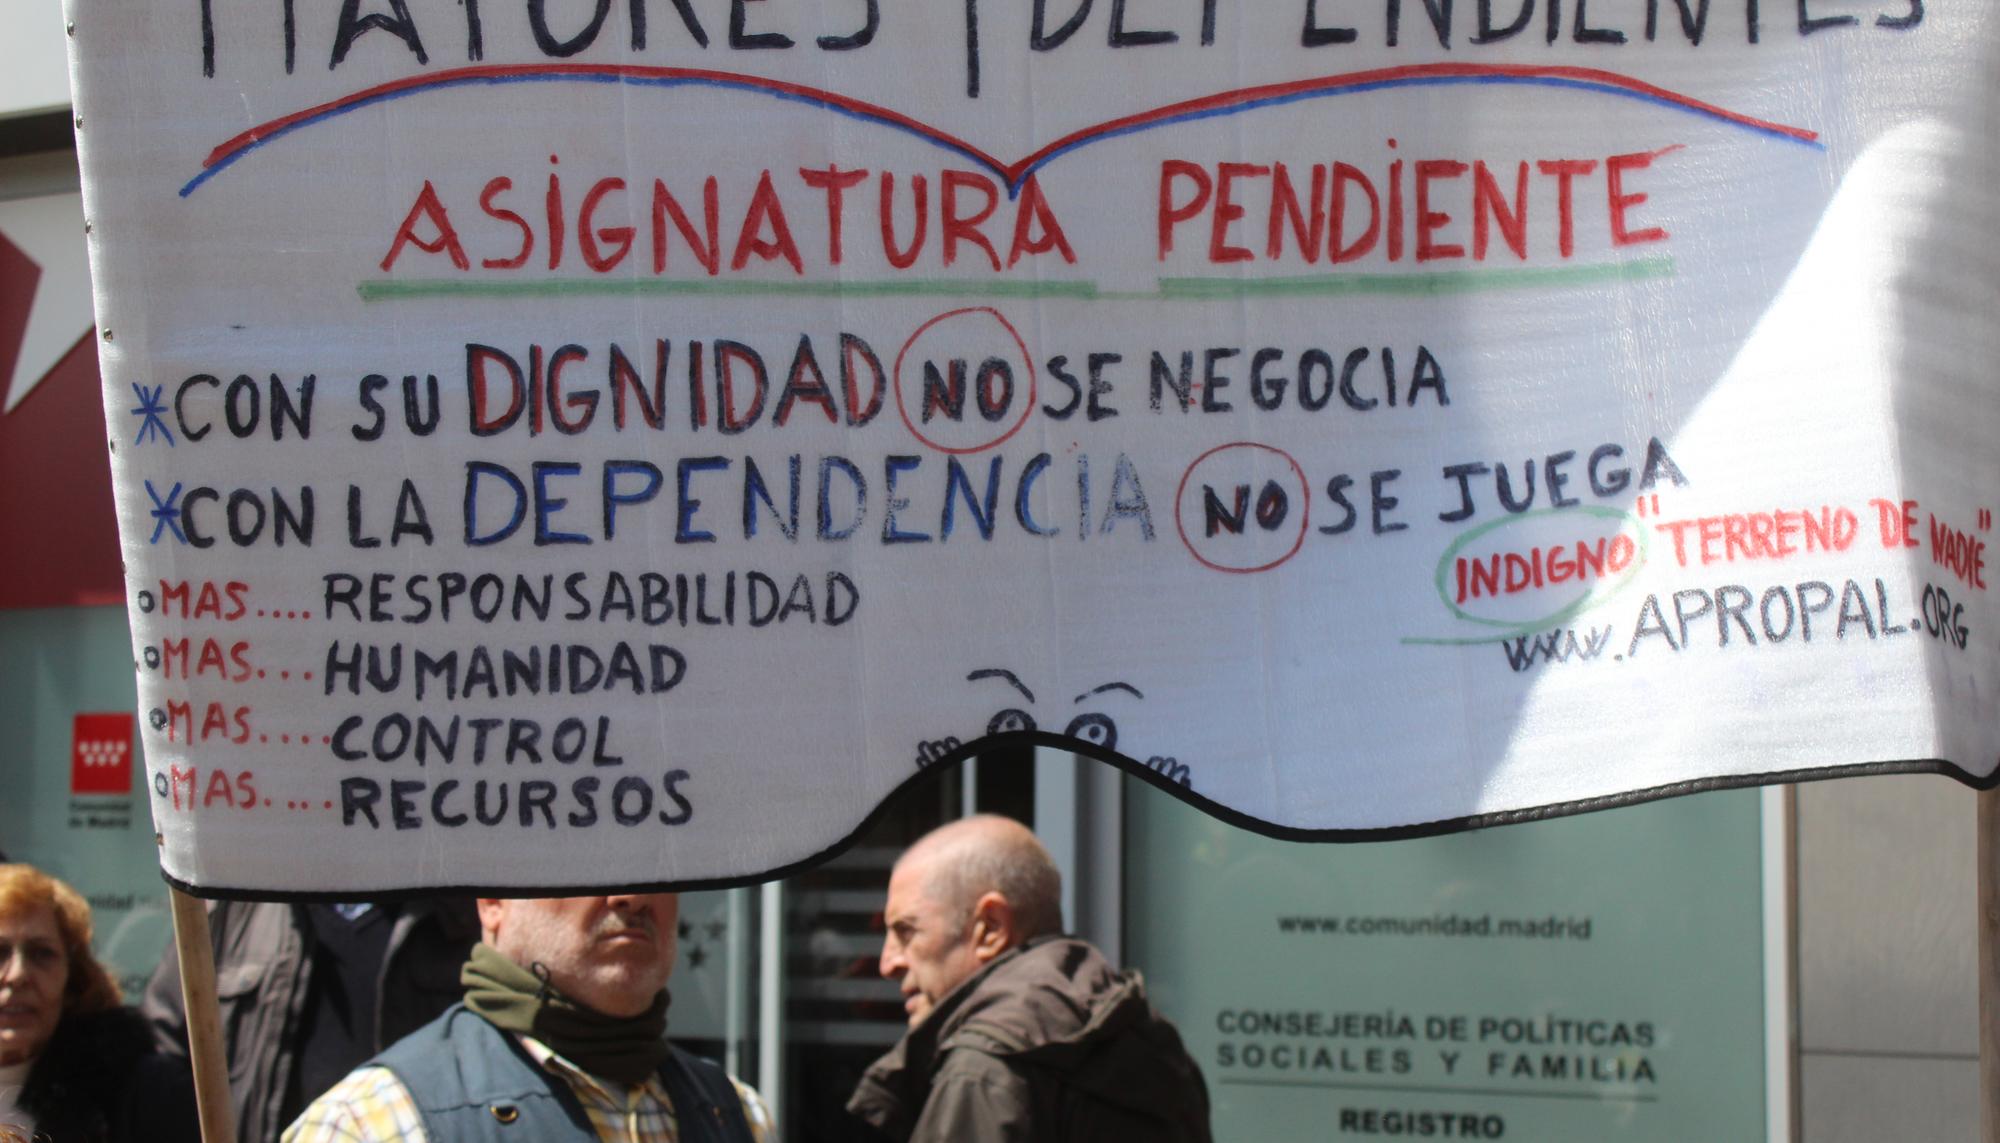 Protestas Residencia Mayores Maltrato Comunidad de Madrid 25/04/19